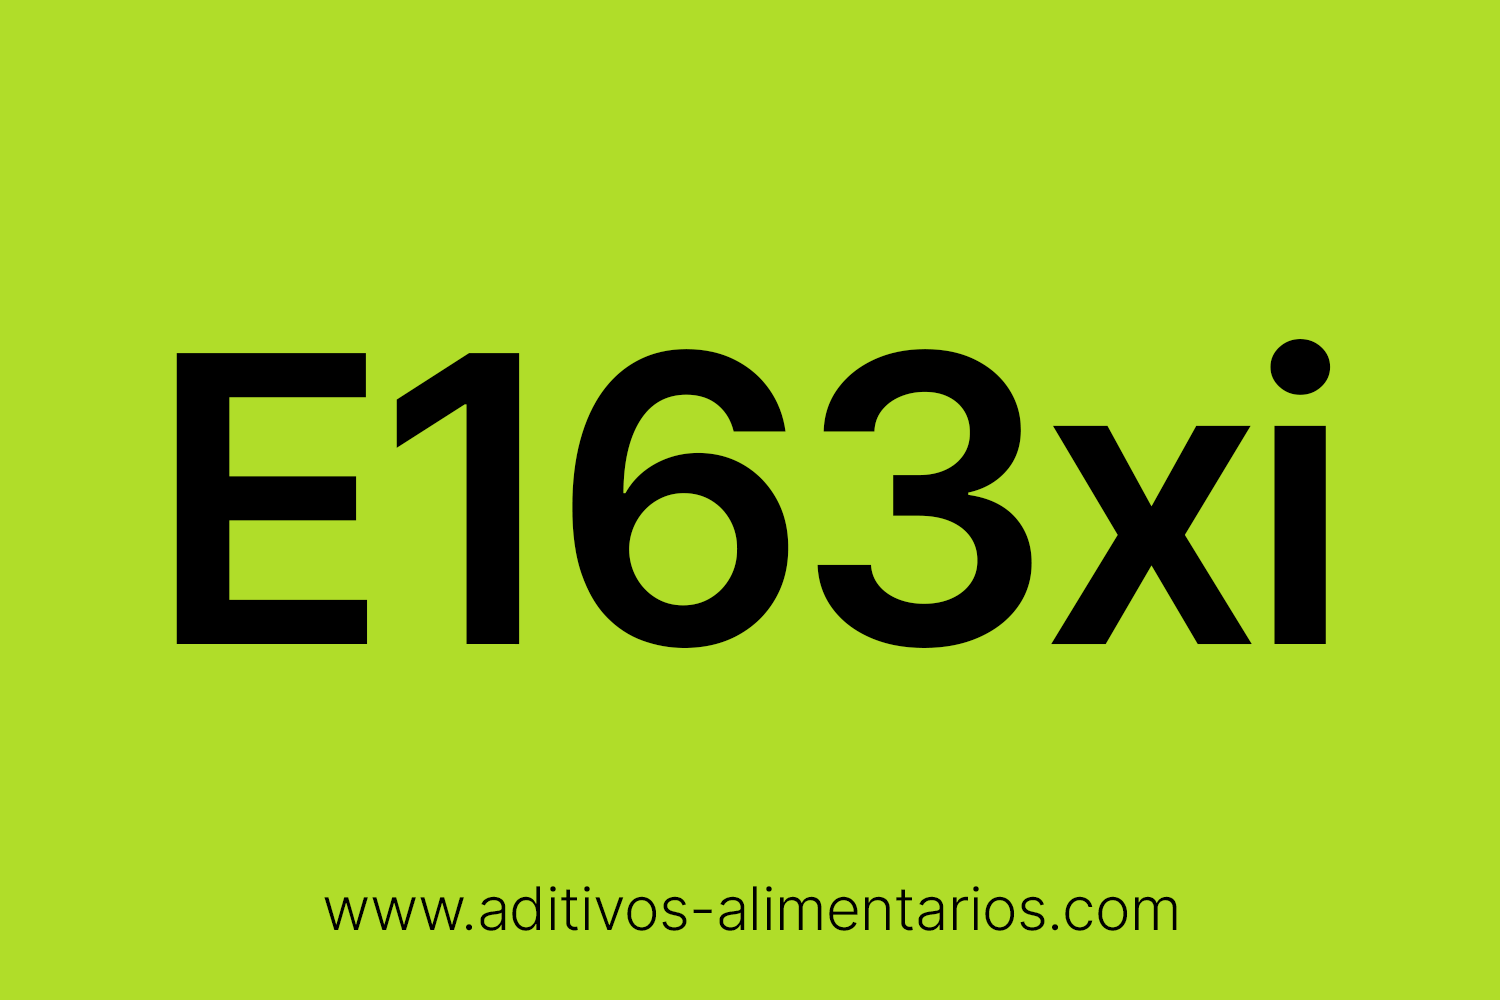 Aditivo Alimentario - E163xi - Extracto de Campanilla Azul